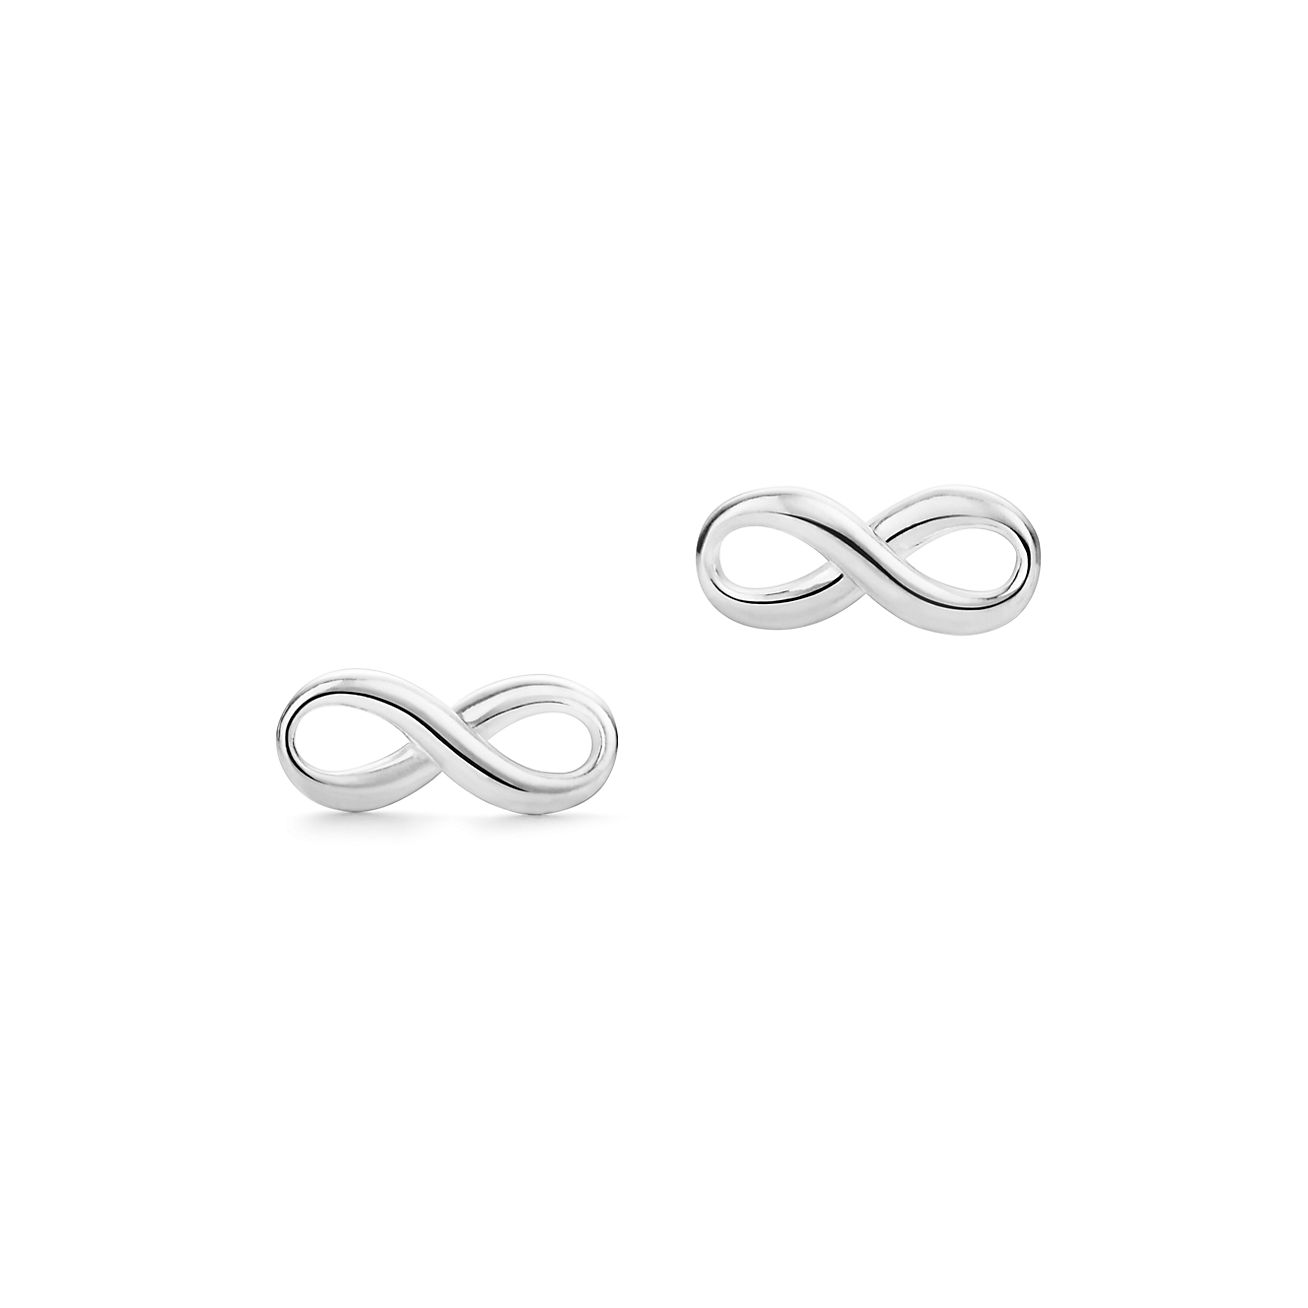 Diamond Infinity Hoop Earrings - Nuha Jewelers